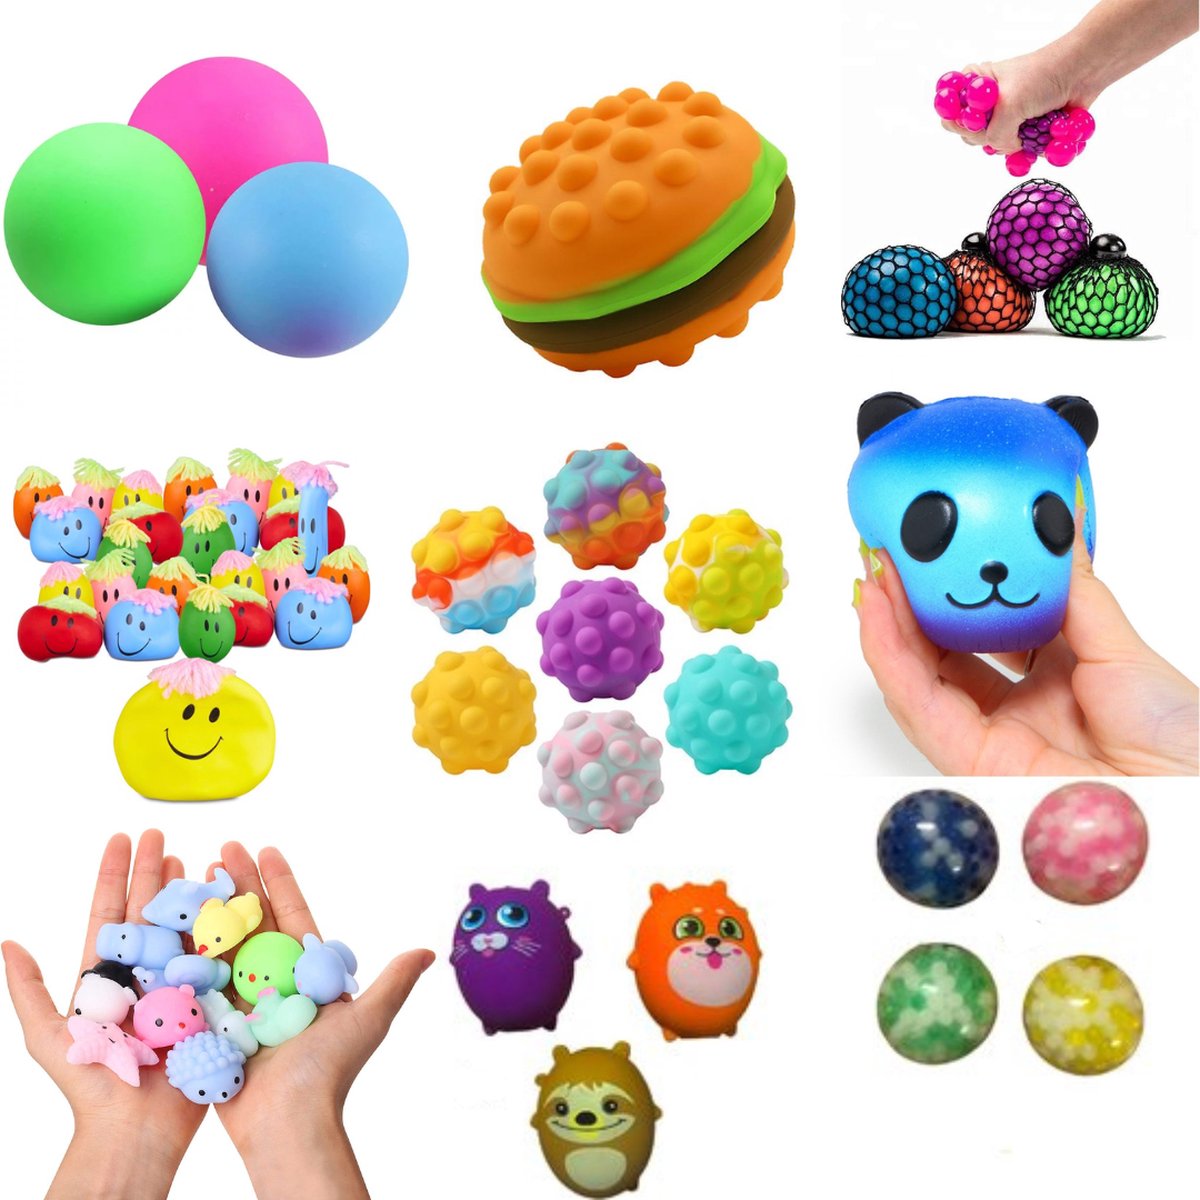 Ensemble de jouets Antistress pour adultes et enfants, paquet